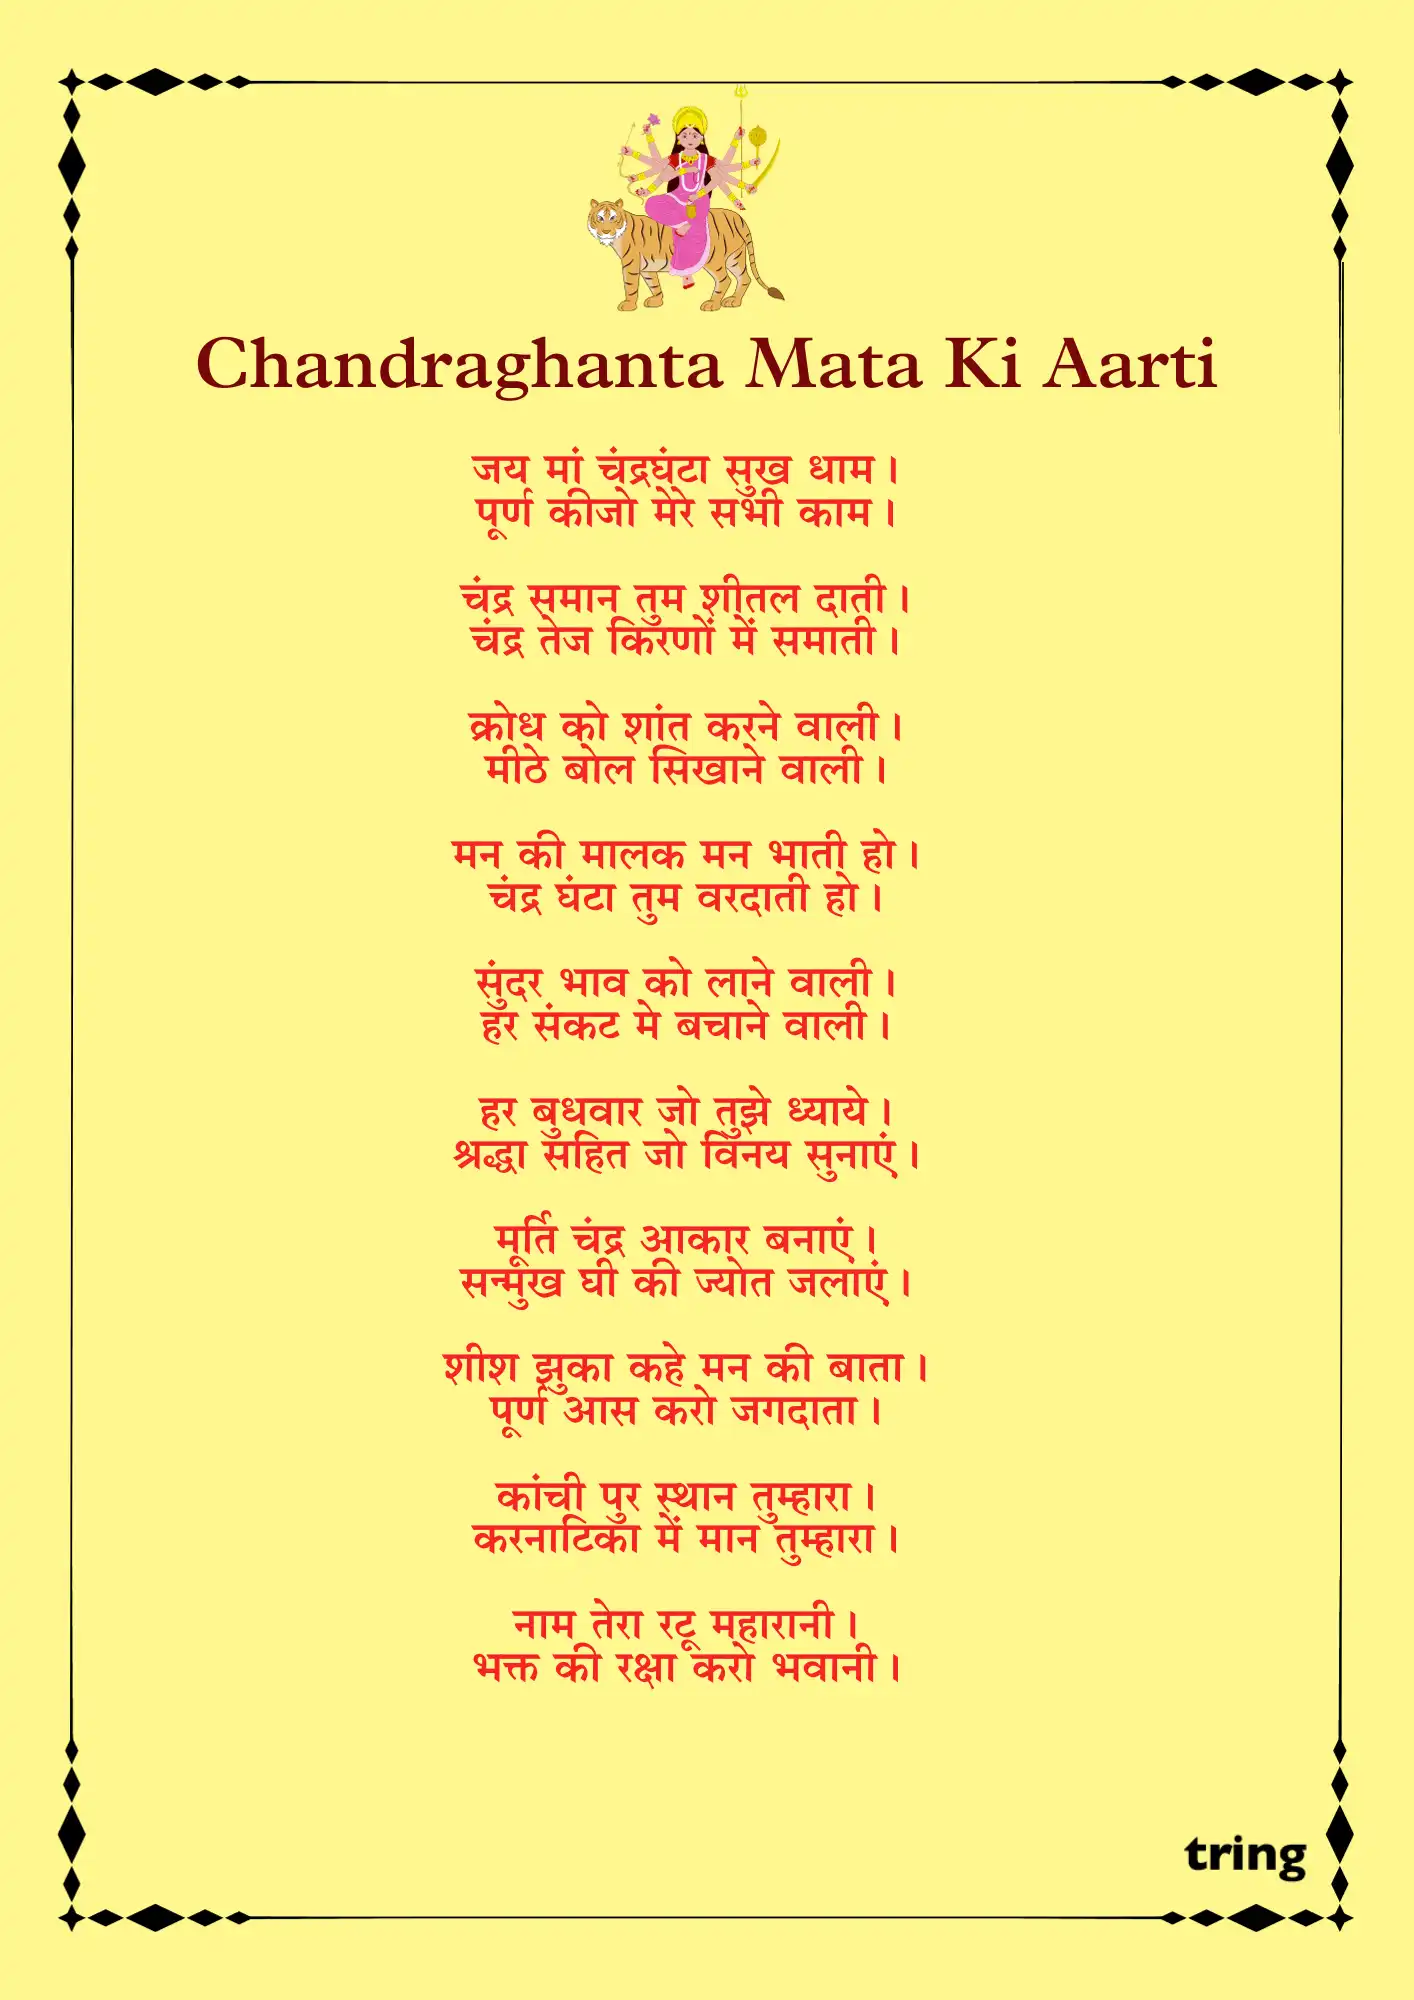 Maa Chandraghanta Ki Aarti English & Hindi | मां चंद्रघंटा की आरती